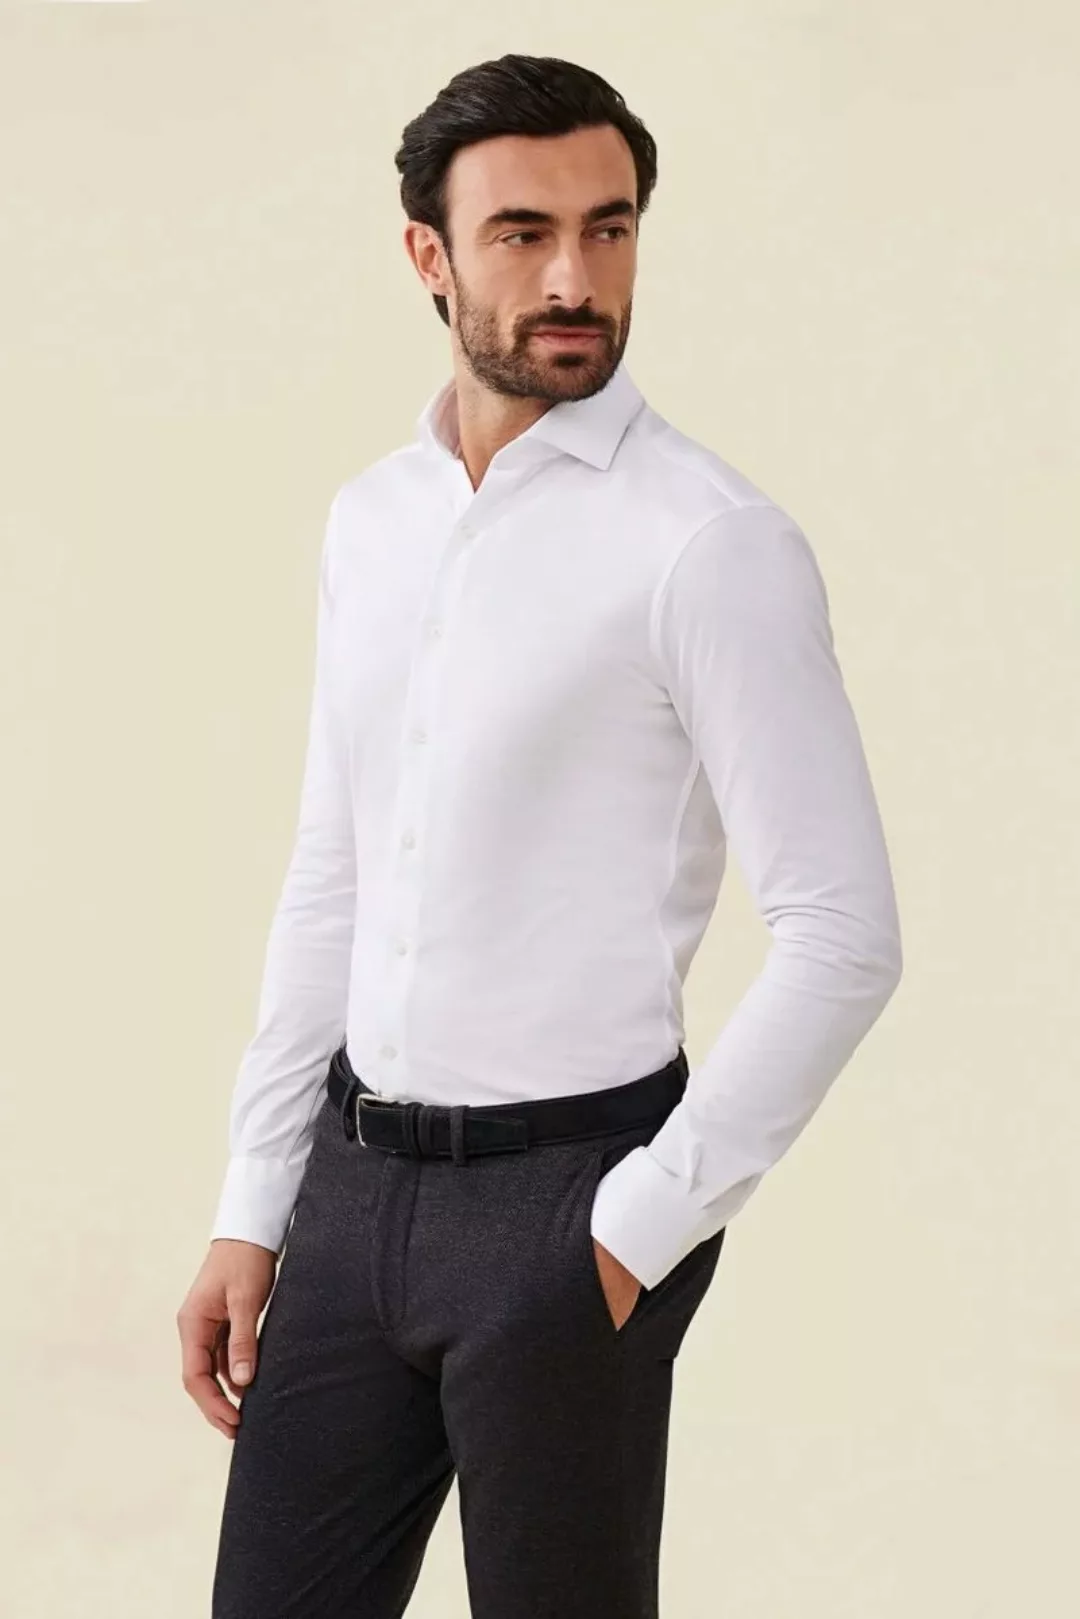 Cavallaro Piqué Hemd Weiß - Größe 44 günstig online kaufen